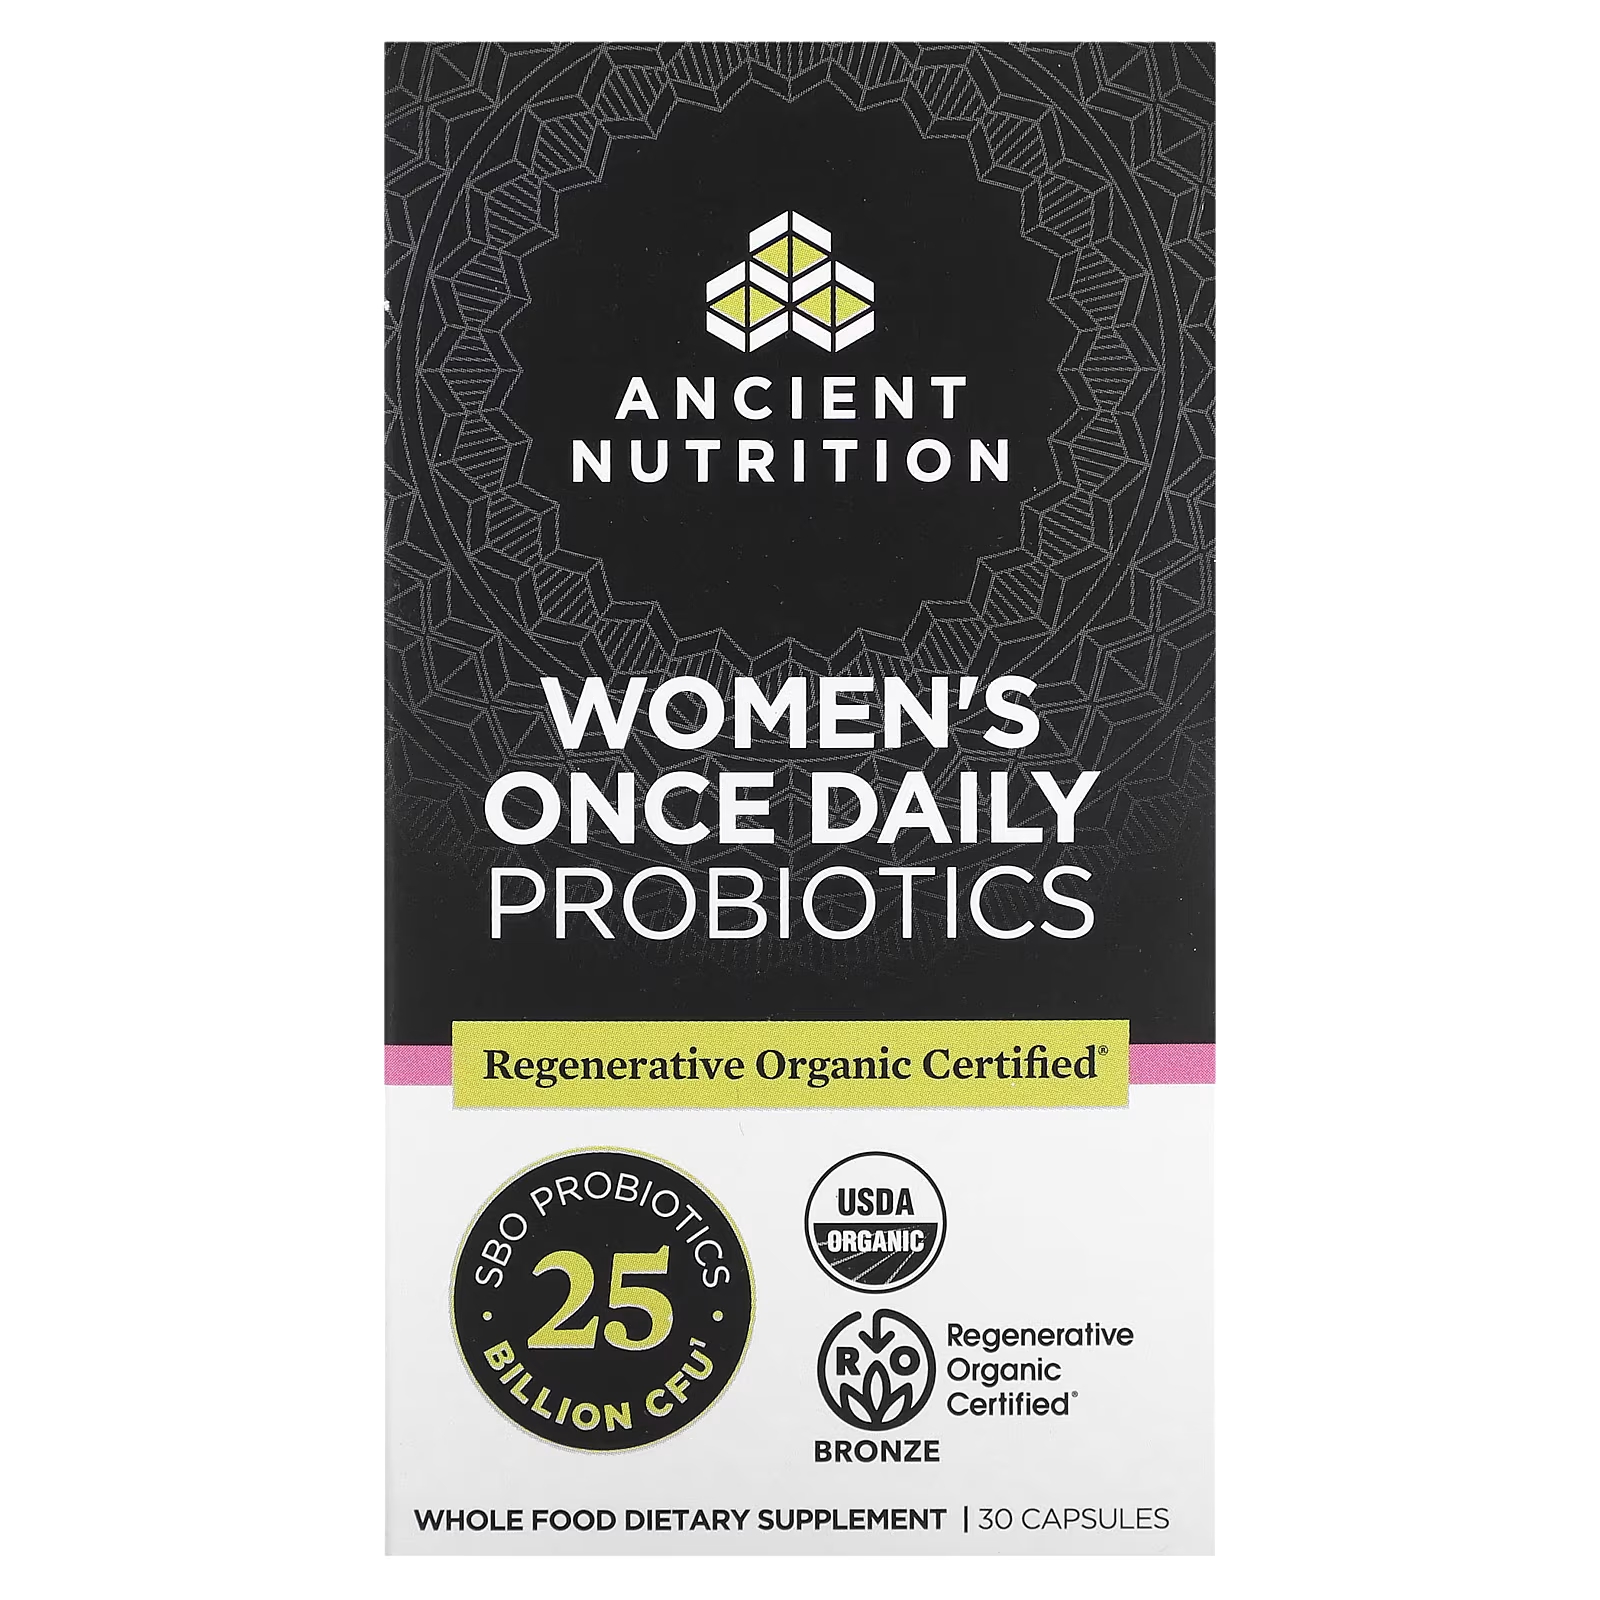 Пробиотики для женщин Ancient Nutrition один раз в день, 30 капсул ancient nutrition sbo пробиотики для женщин один раз в день 25 миллиардов кое 30 капсул